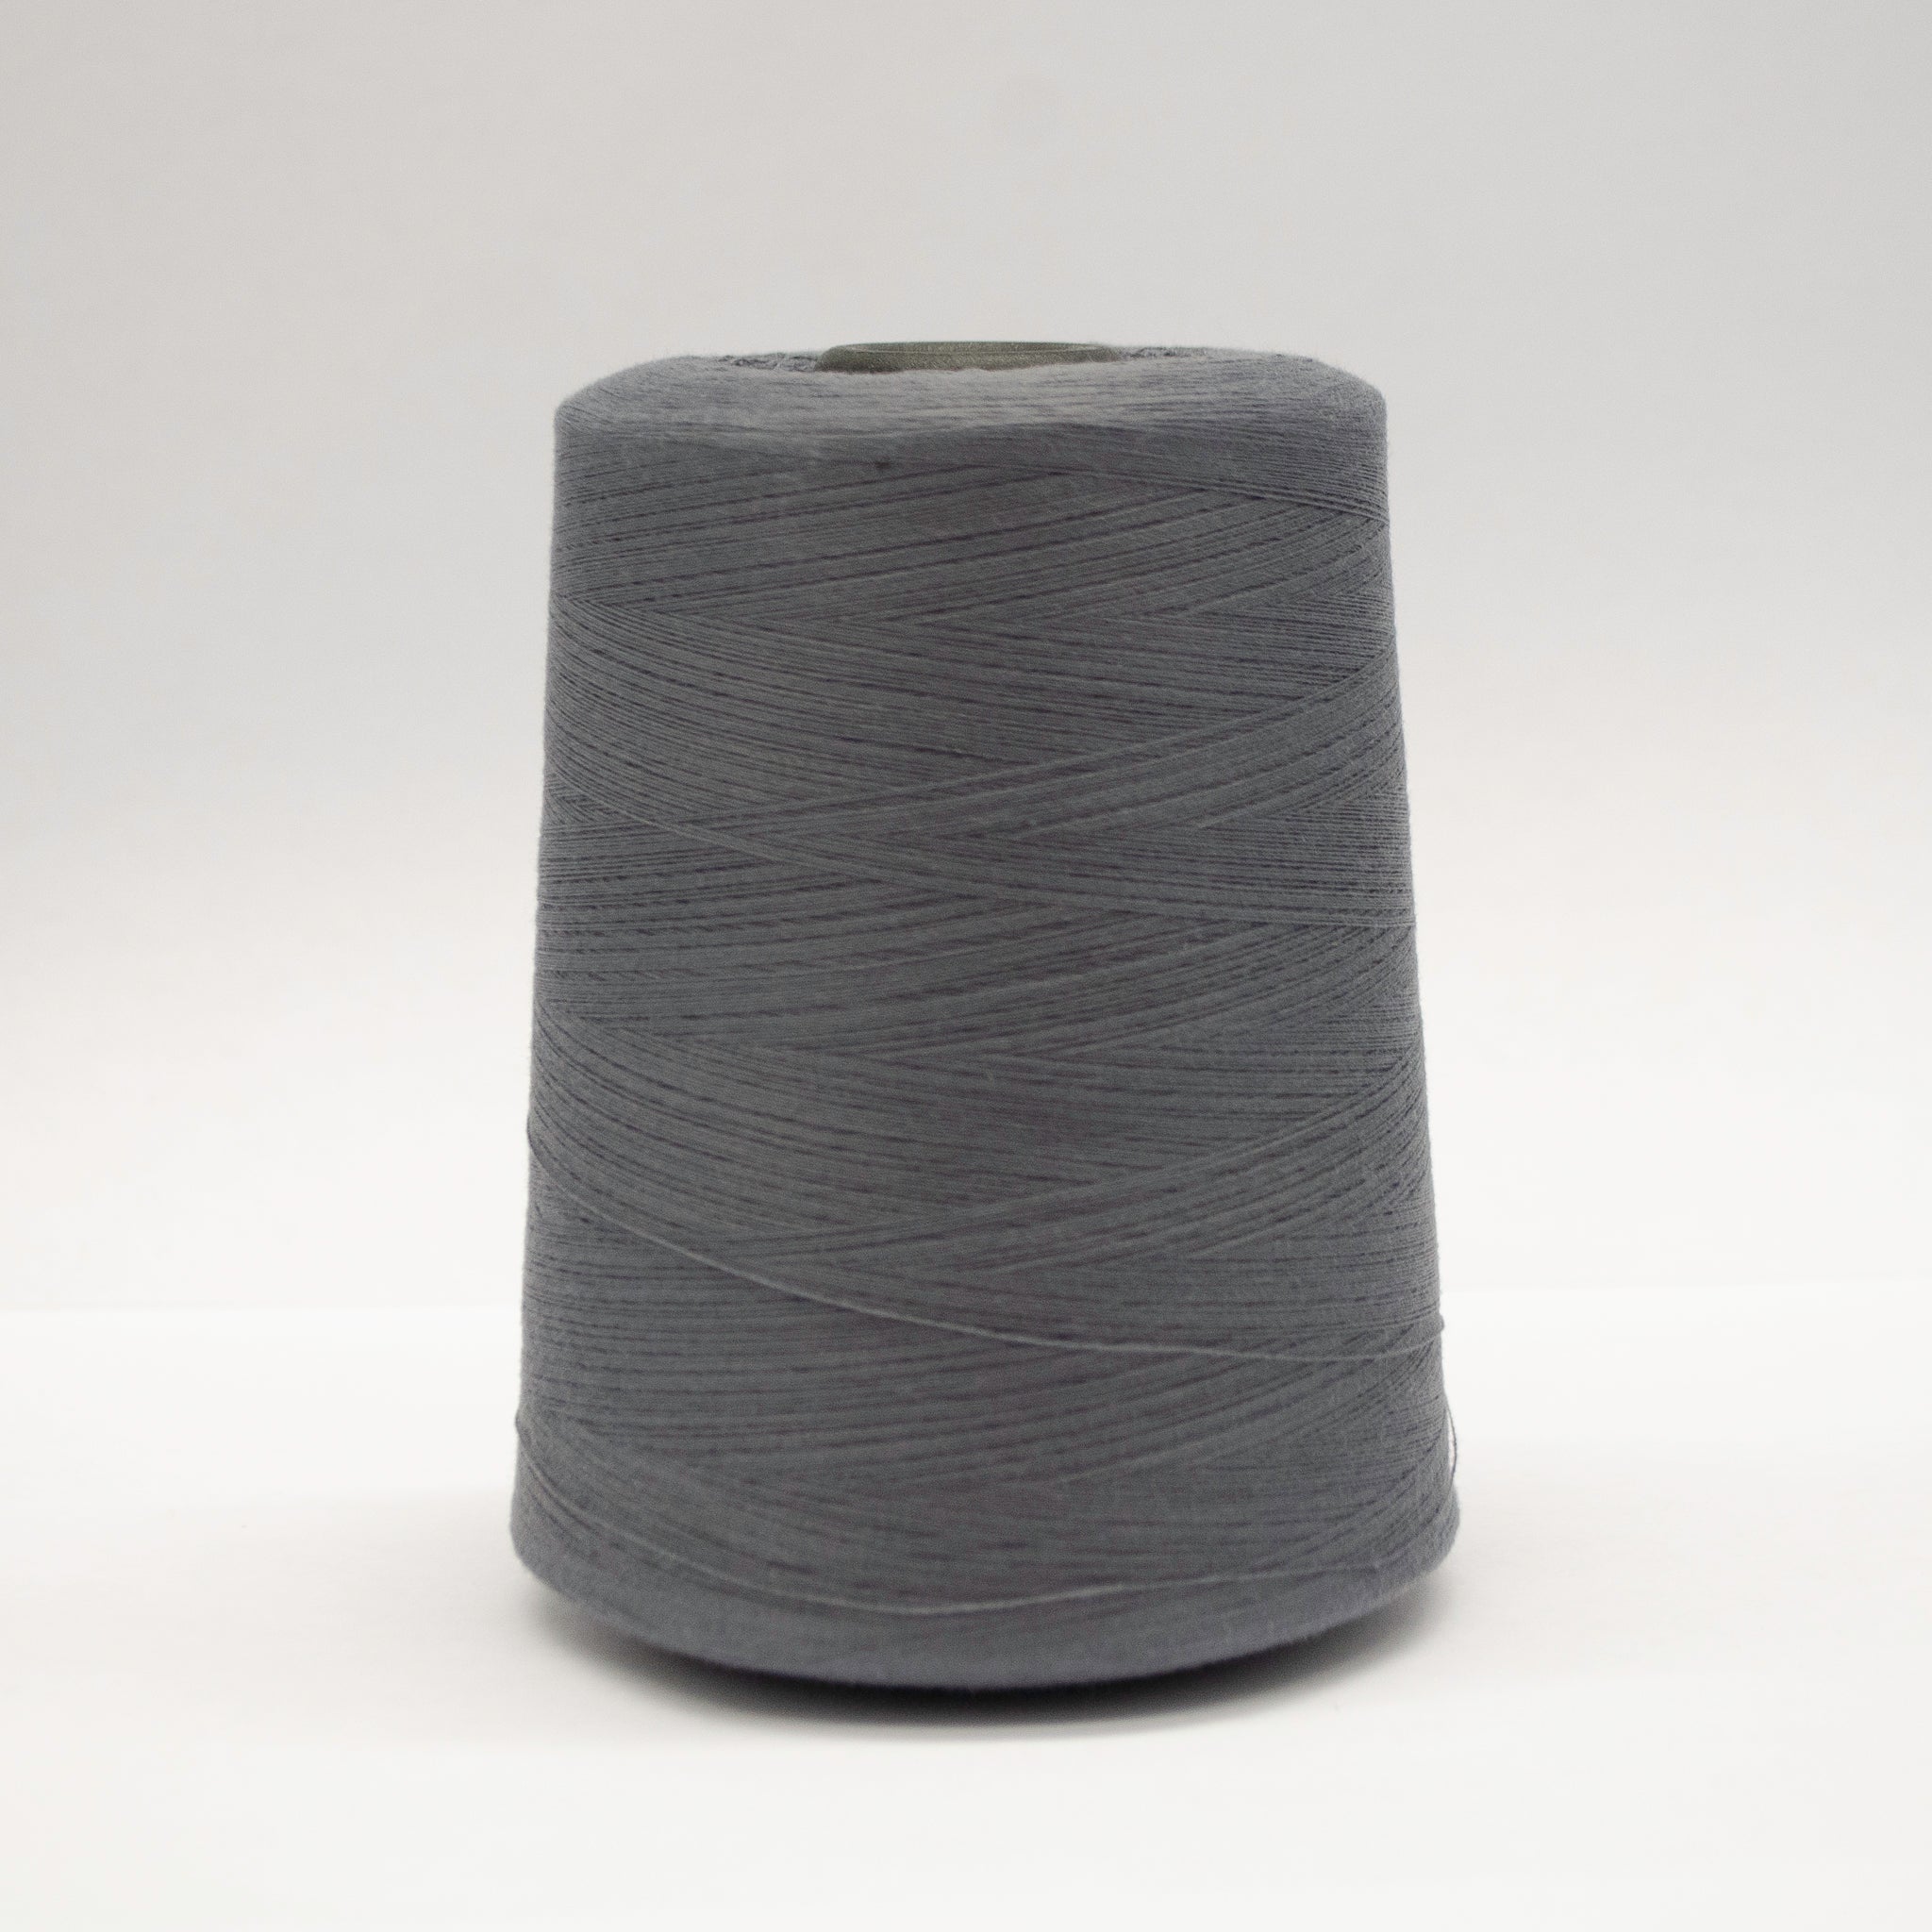 100% Polyester Tex 27 Sewing Thread 10,000 Yards - Medium Grey #5703